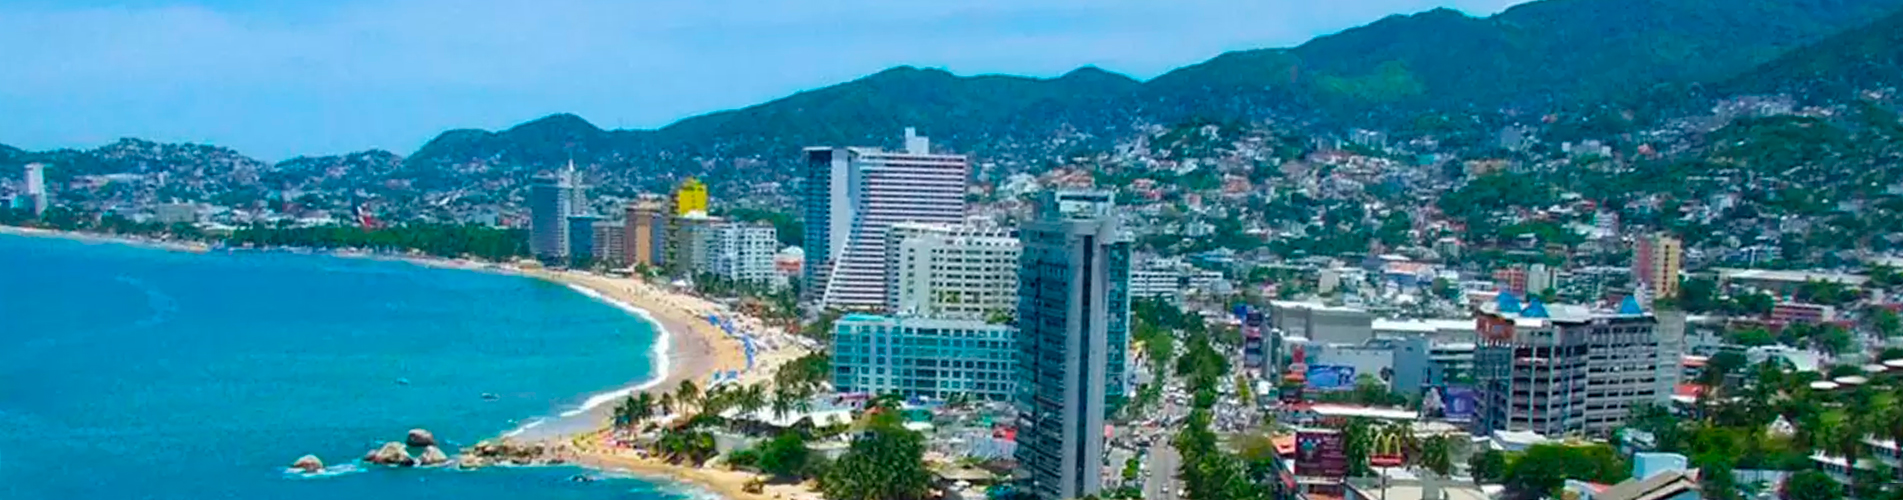 zona dorada acapulco